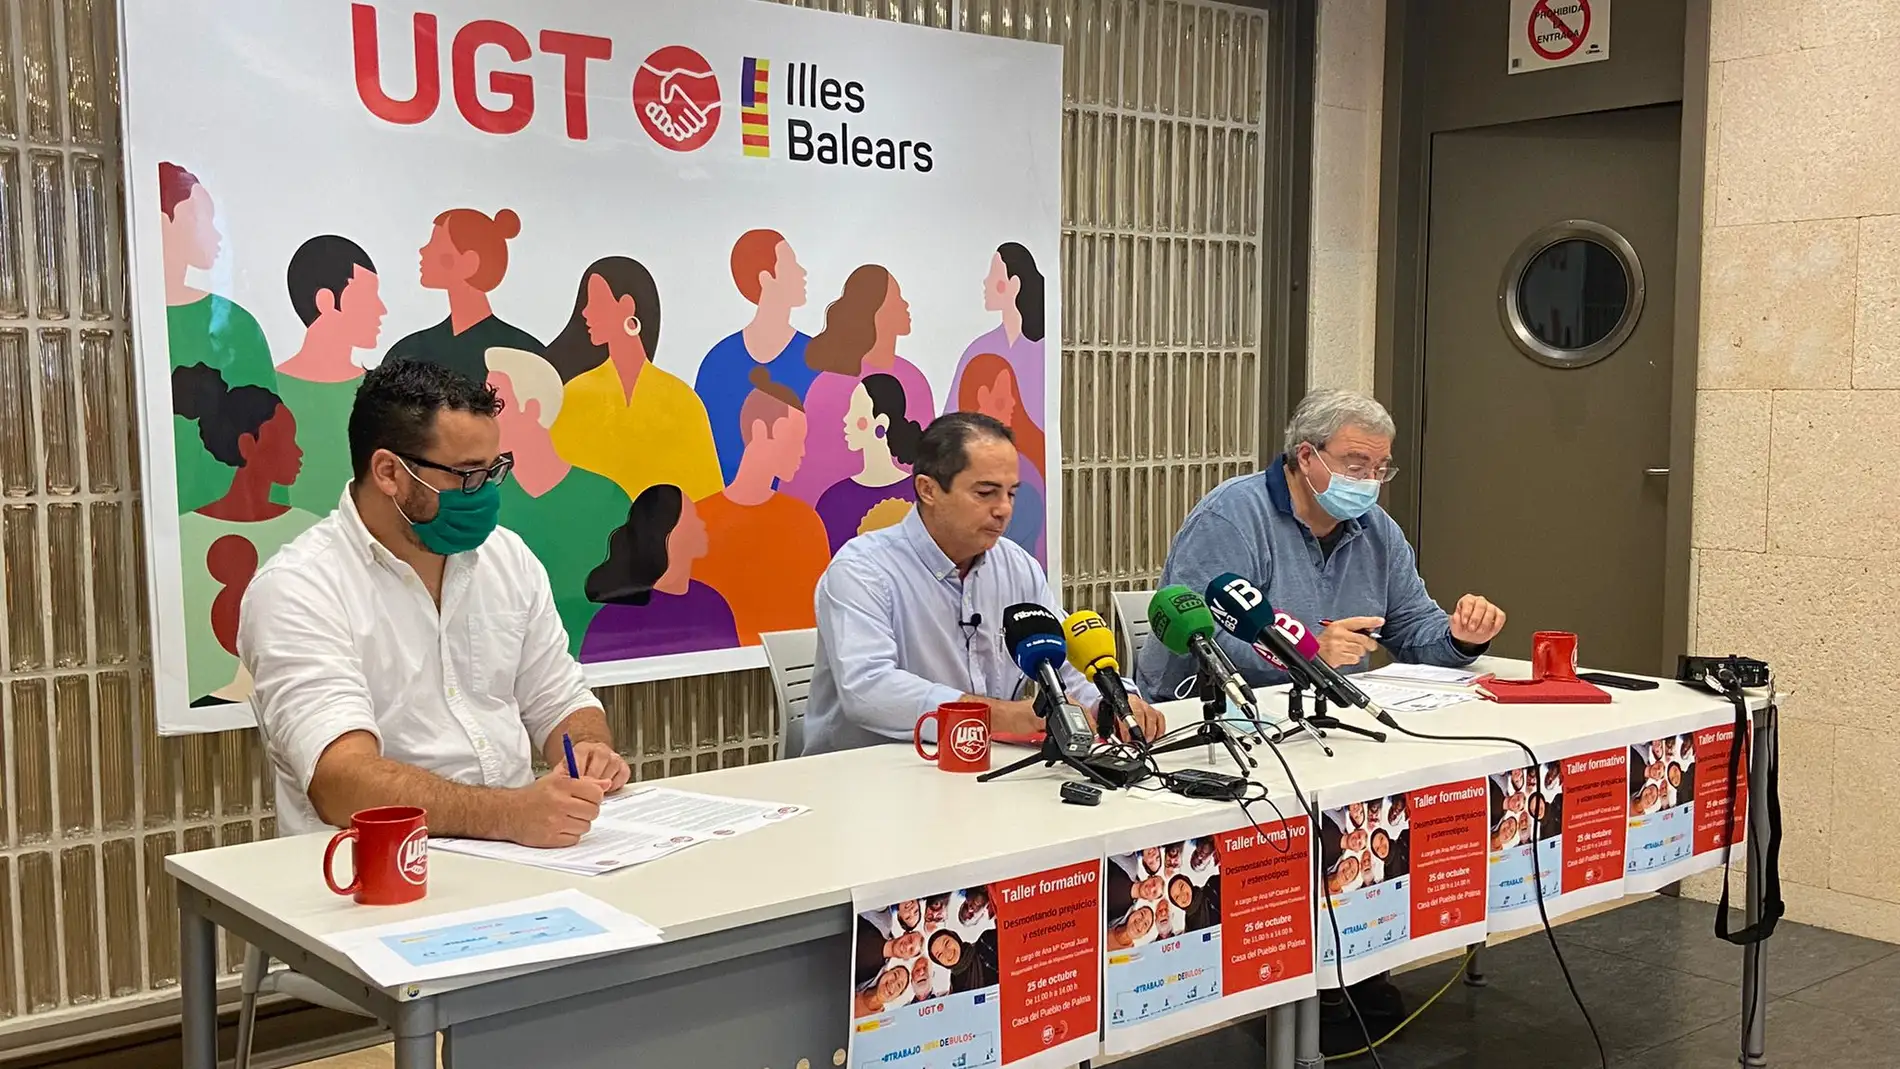 El secretario general de UGT Servicios Públicos en Baleares, Miguel Ángel Romero, en el centro de la foto, junto a Guiem Coll, secretario de adminsitración de UGT a la derecha, y Juanjo del Teso, responsable de residuos urbanos del sindicato, a la izquierda. 